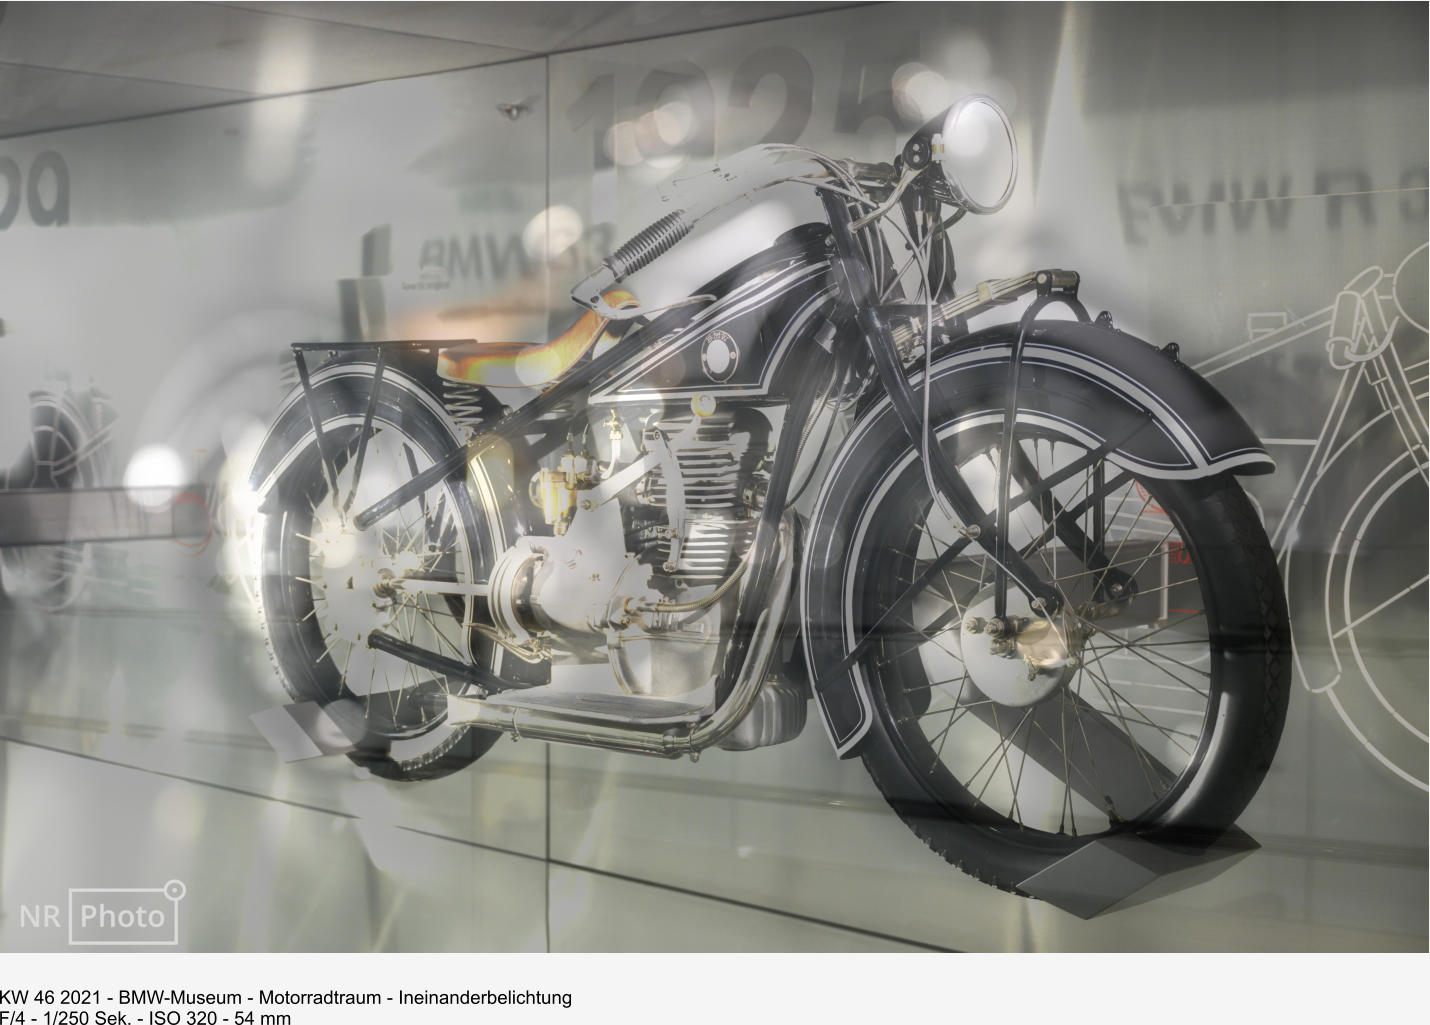 KW 46 2021 - BMW-Museum - Motorradtraum - Ineinanderbelichtung F/4 - 1/250 Sek. - ISO 320 - 54 mm